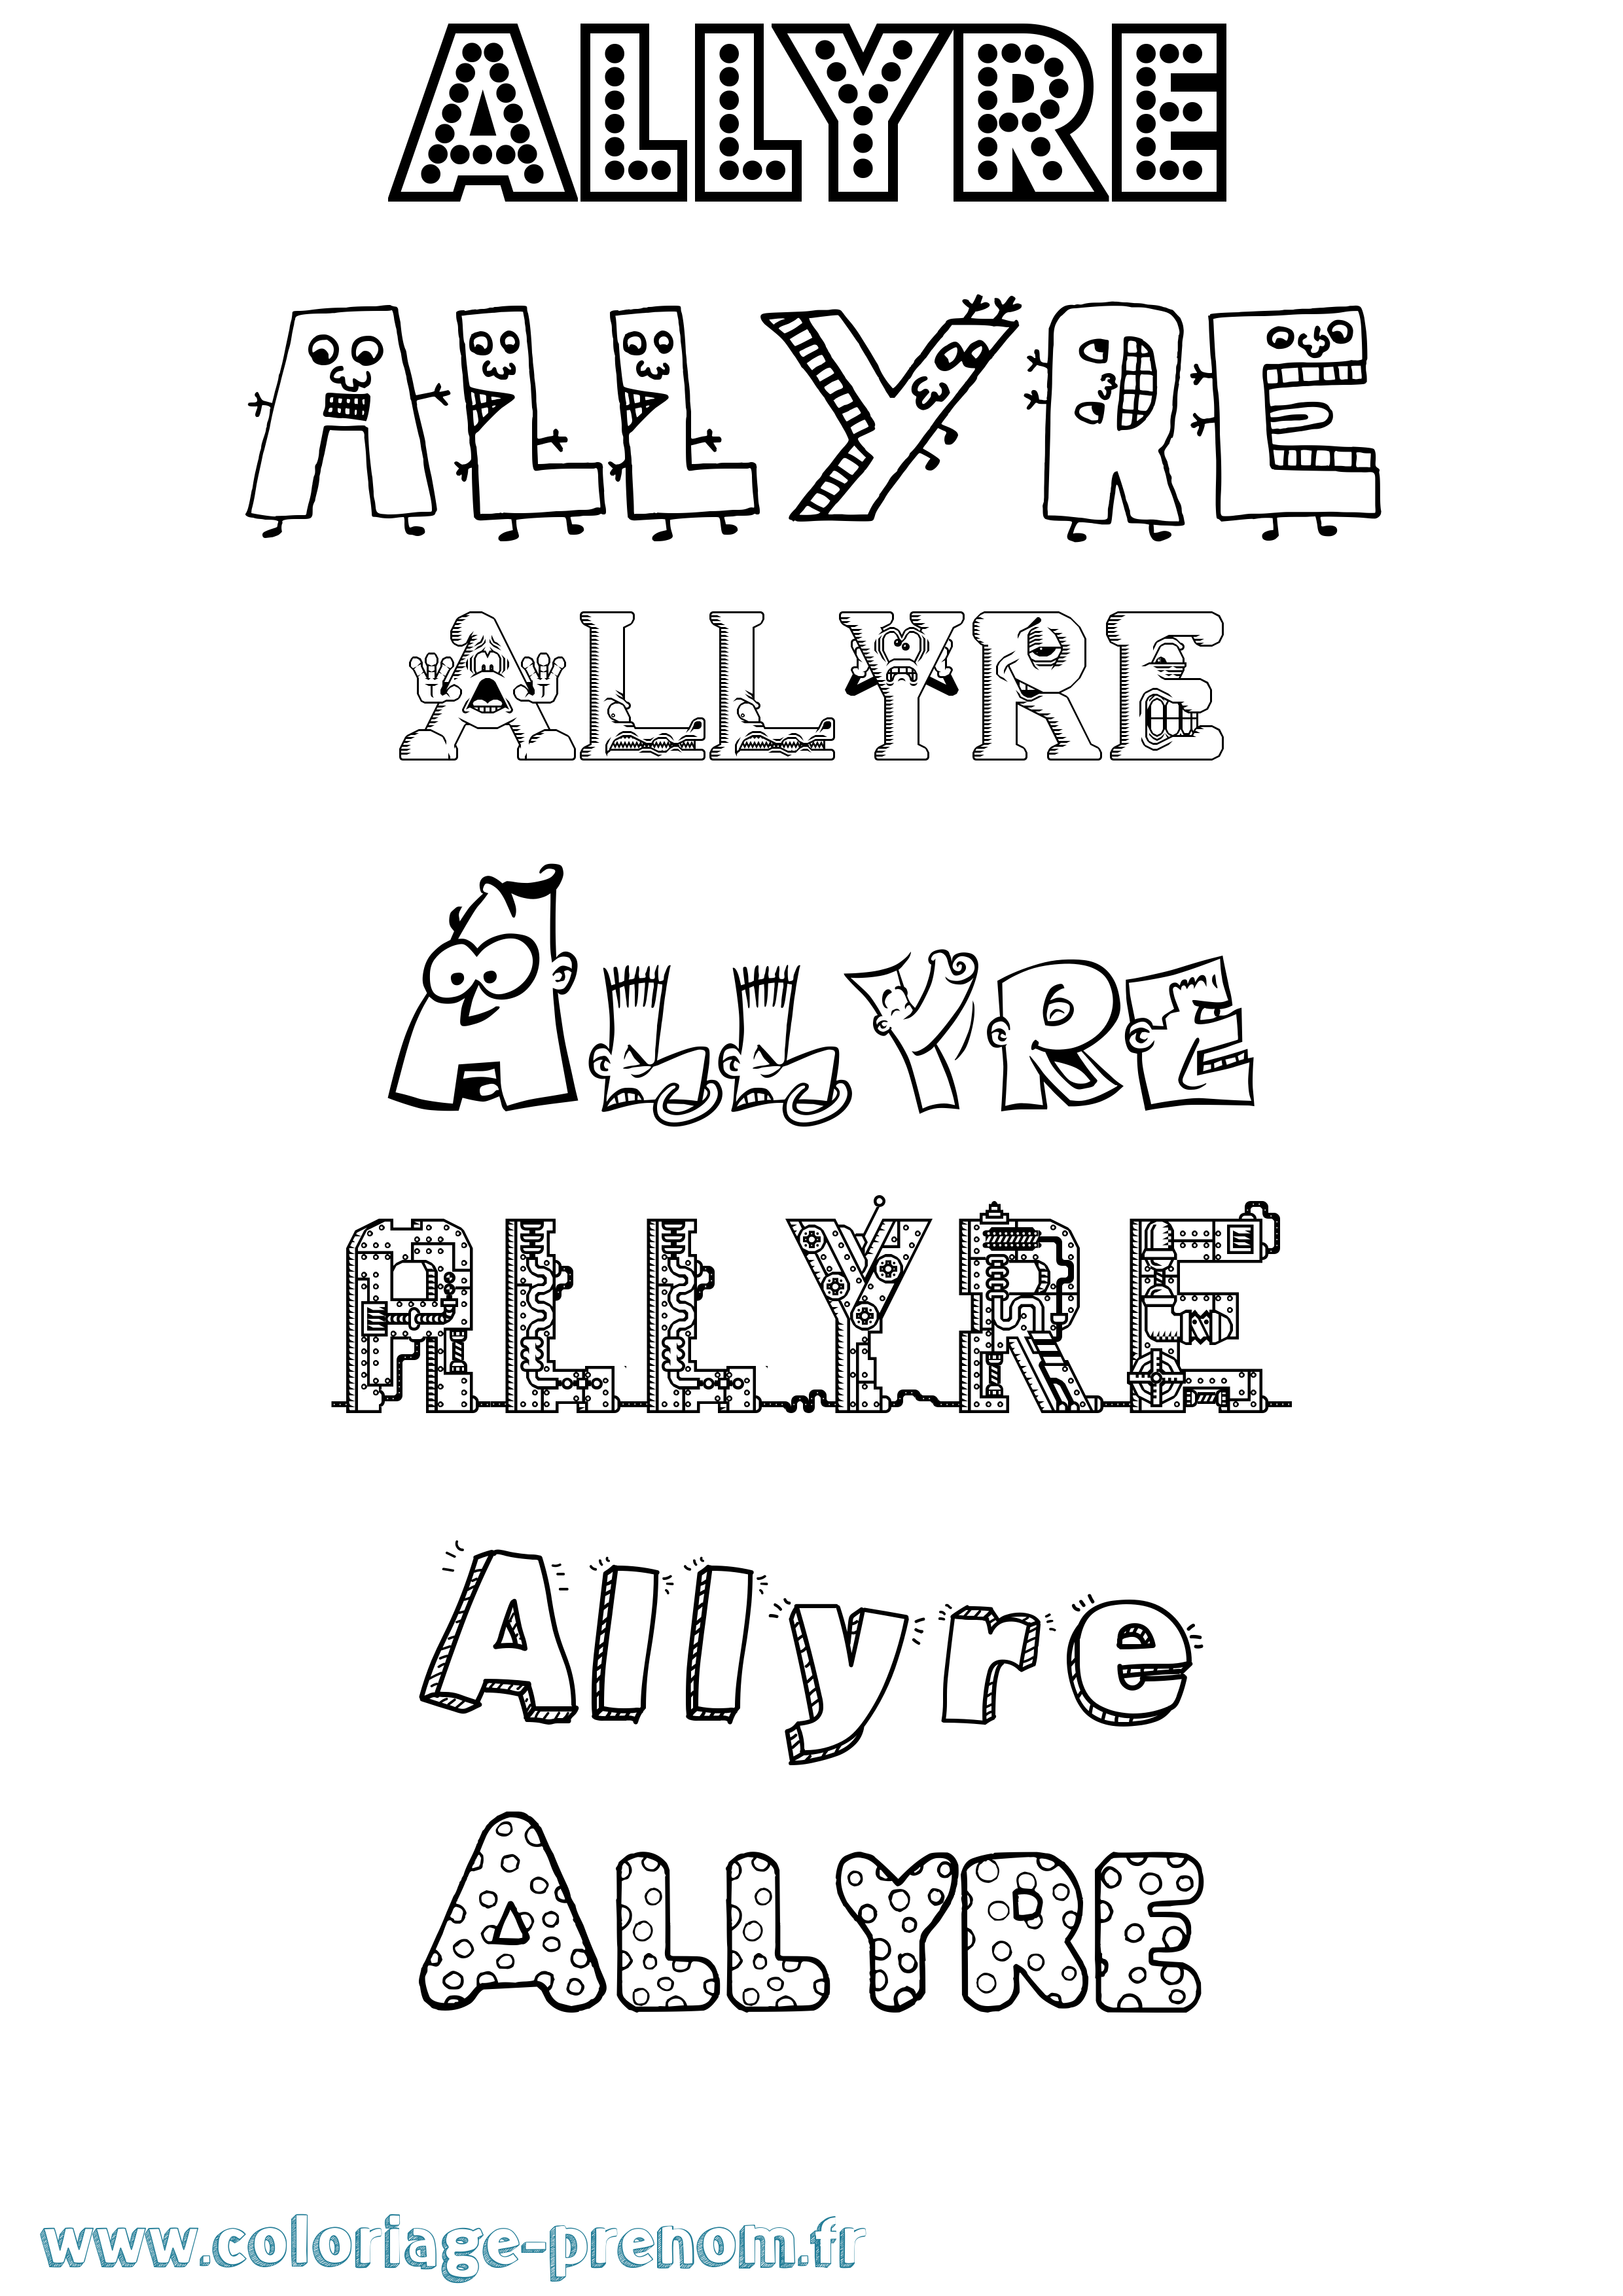 Coloriage prénom Allyre Fun